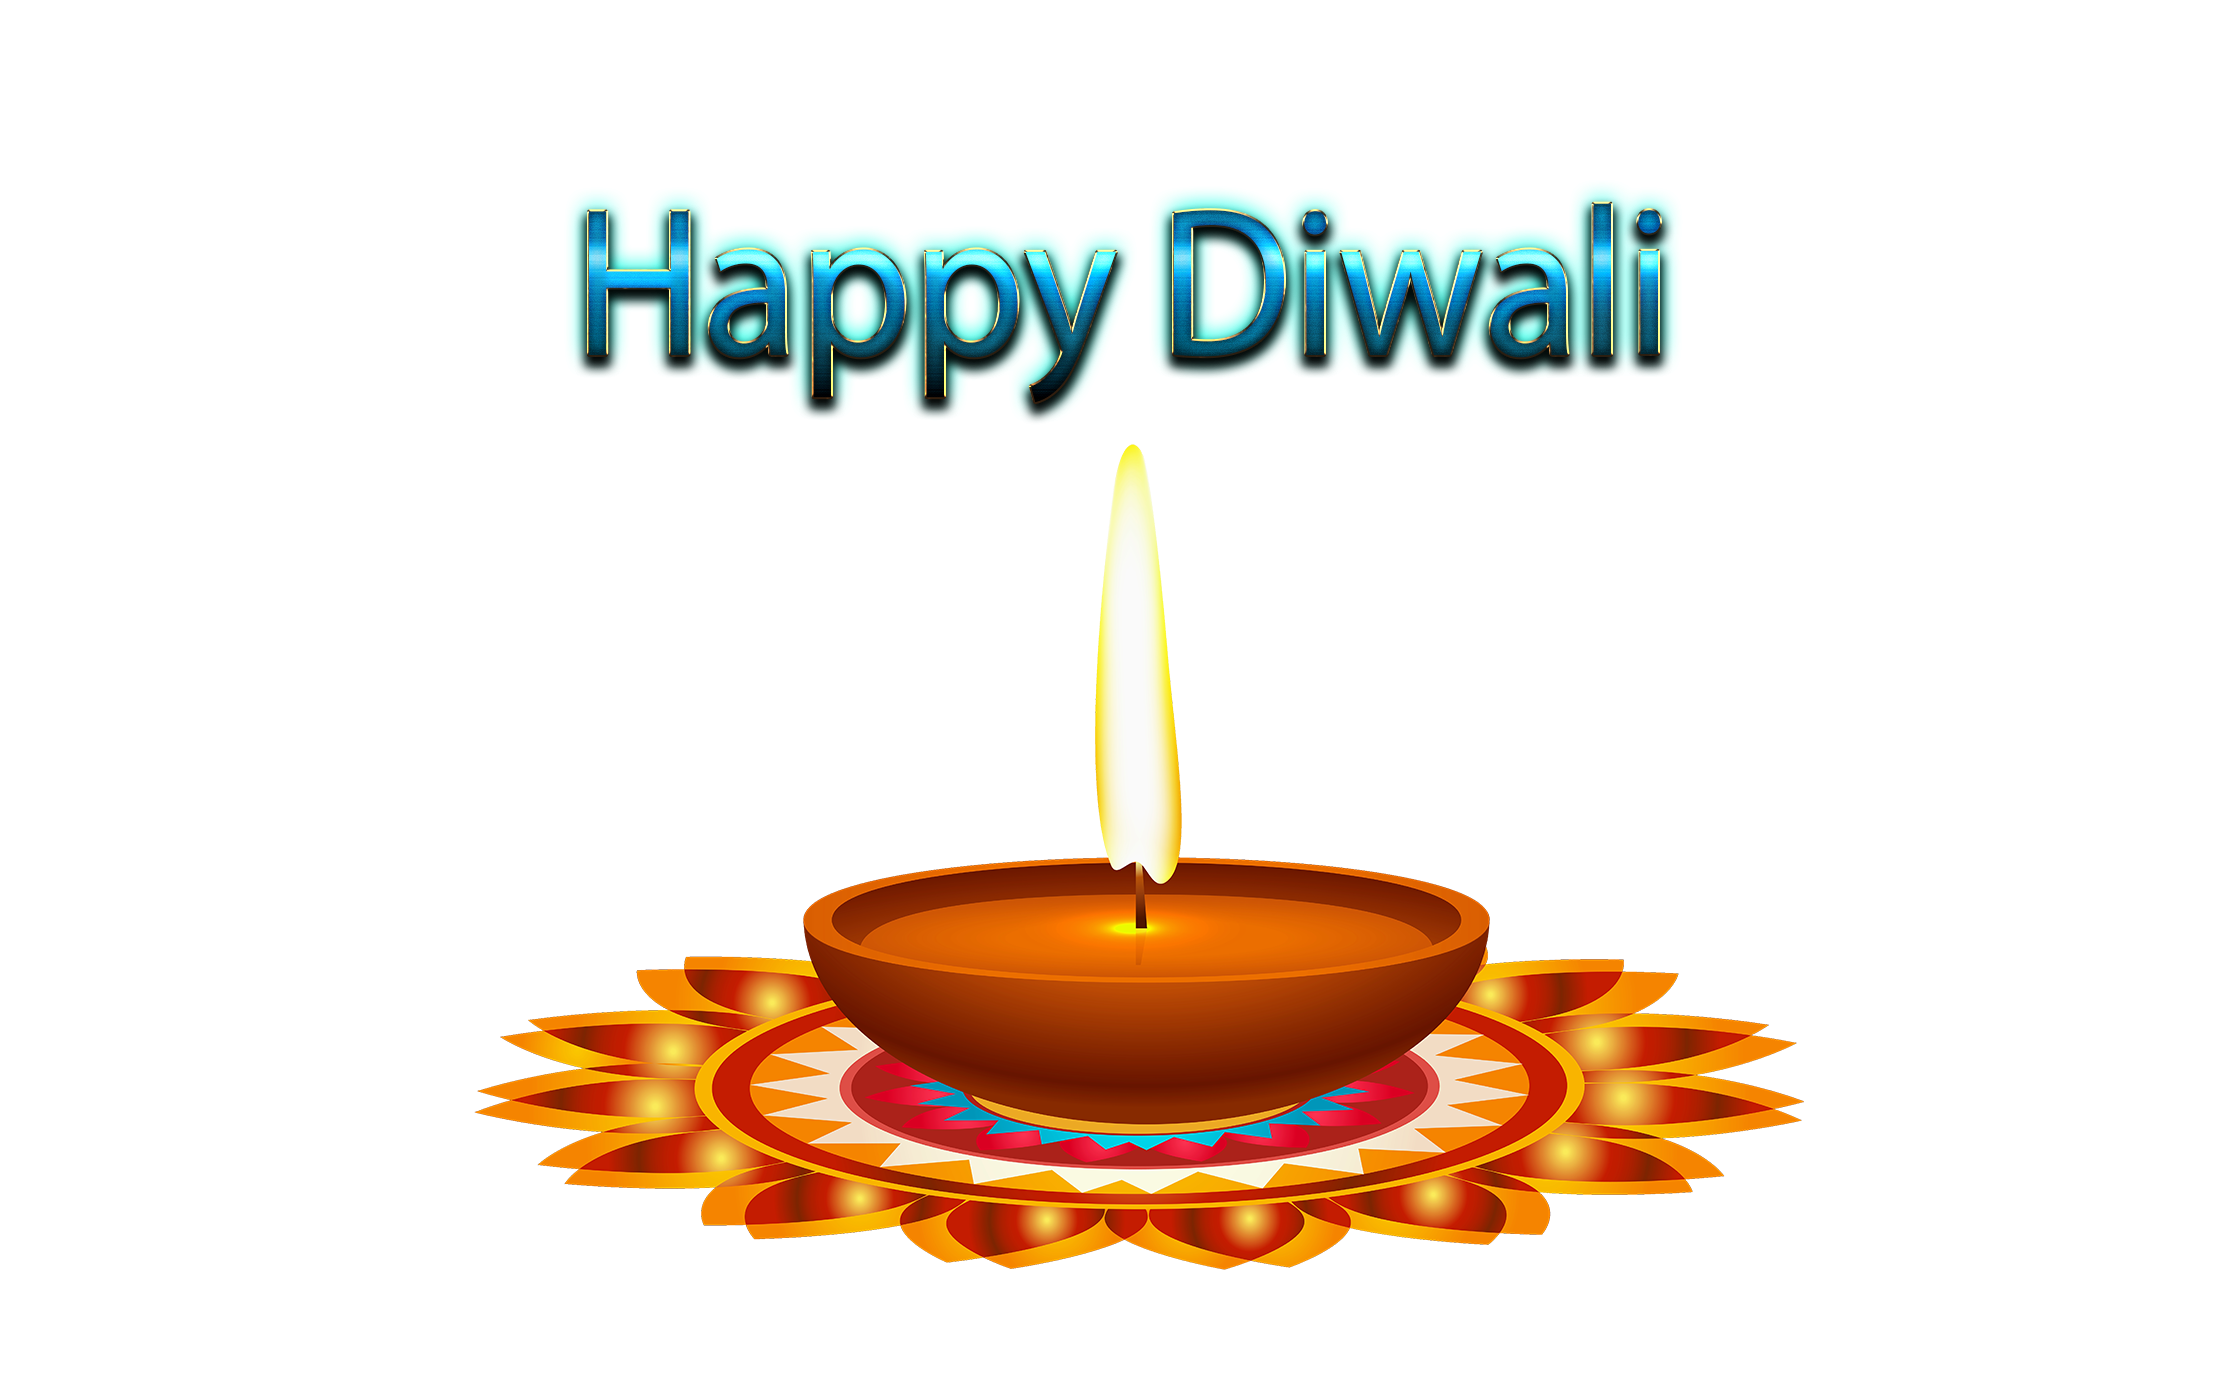 Diwali PNG Image in Transparent